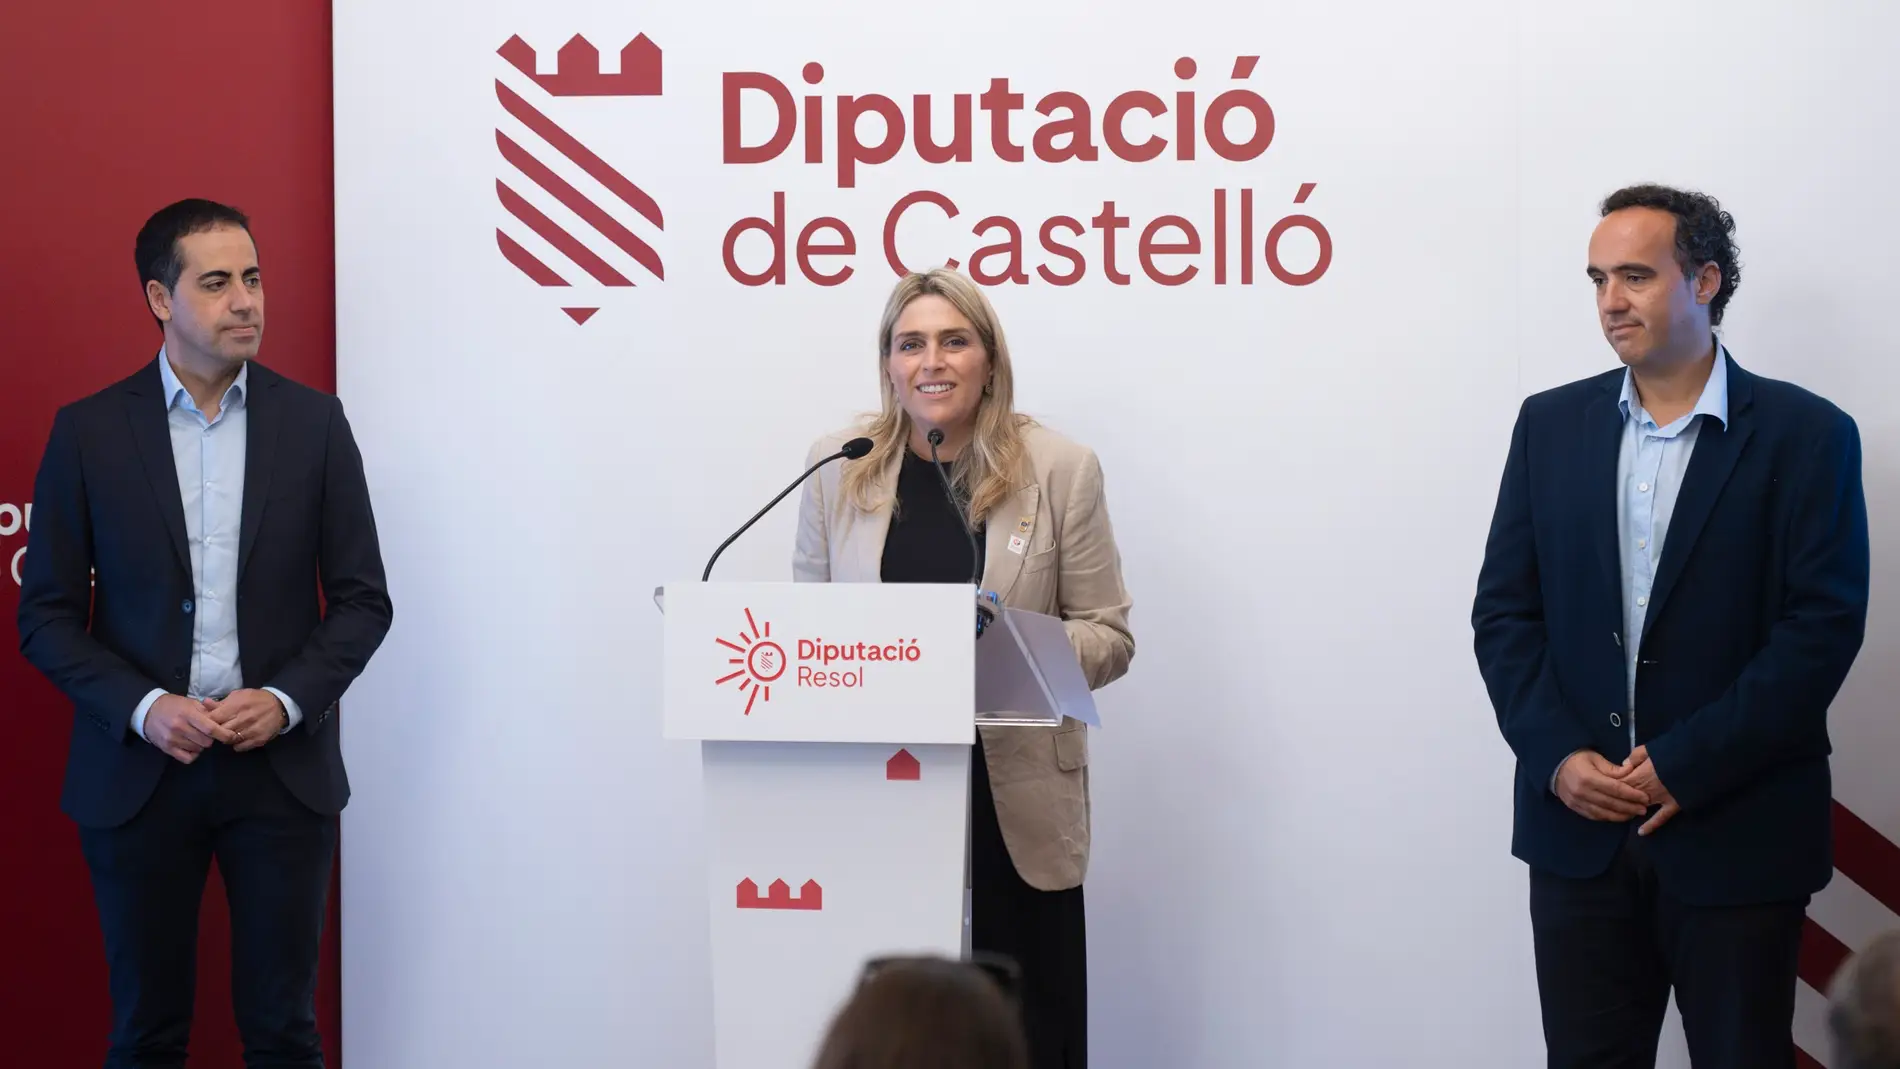  La Diputación de Castellón lanza una iniciativa para disminuir el consumo de energía los pequeños municipios